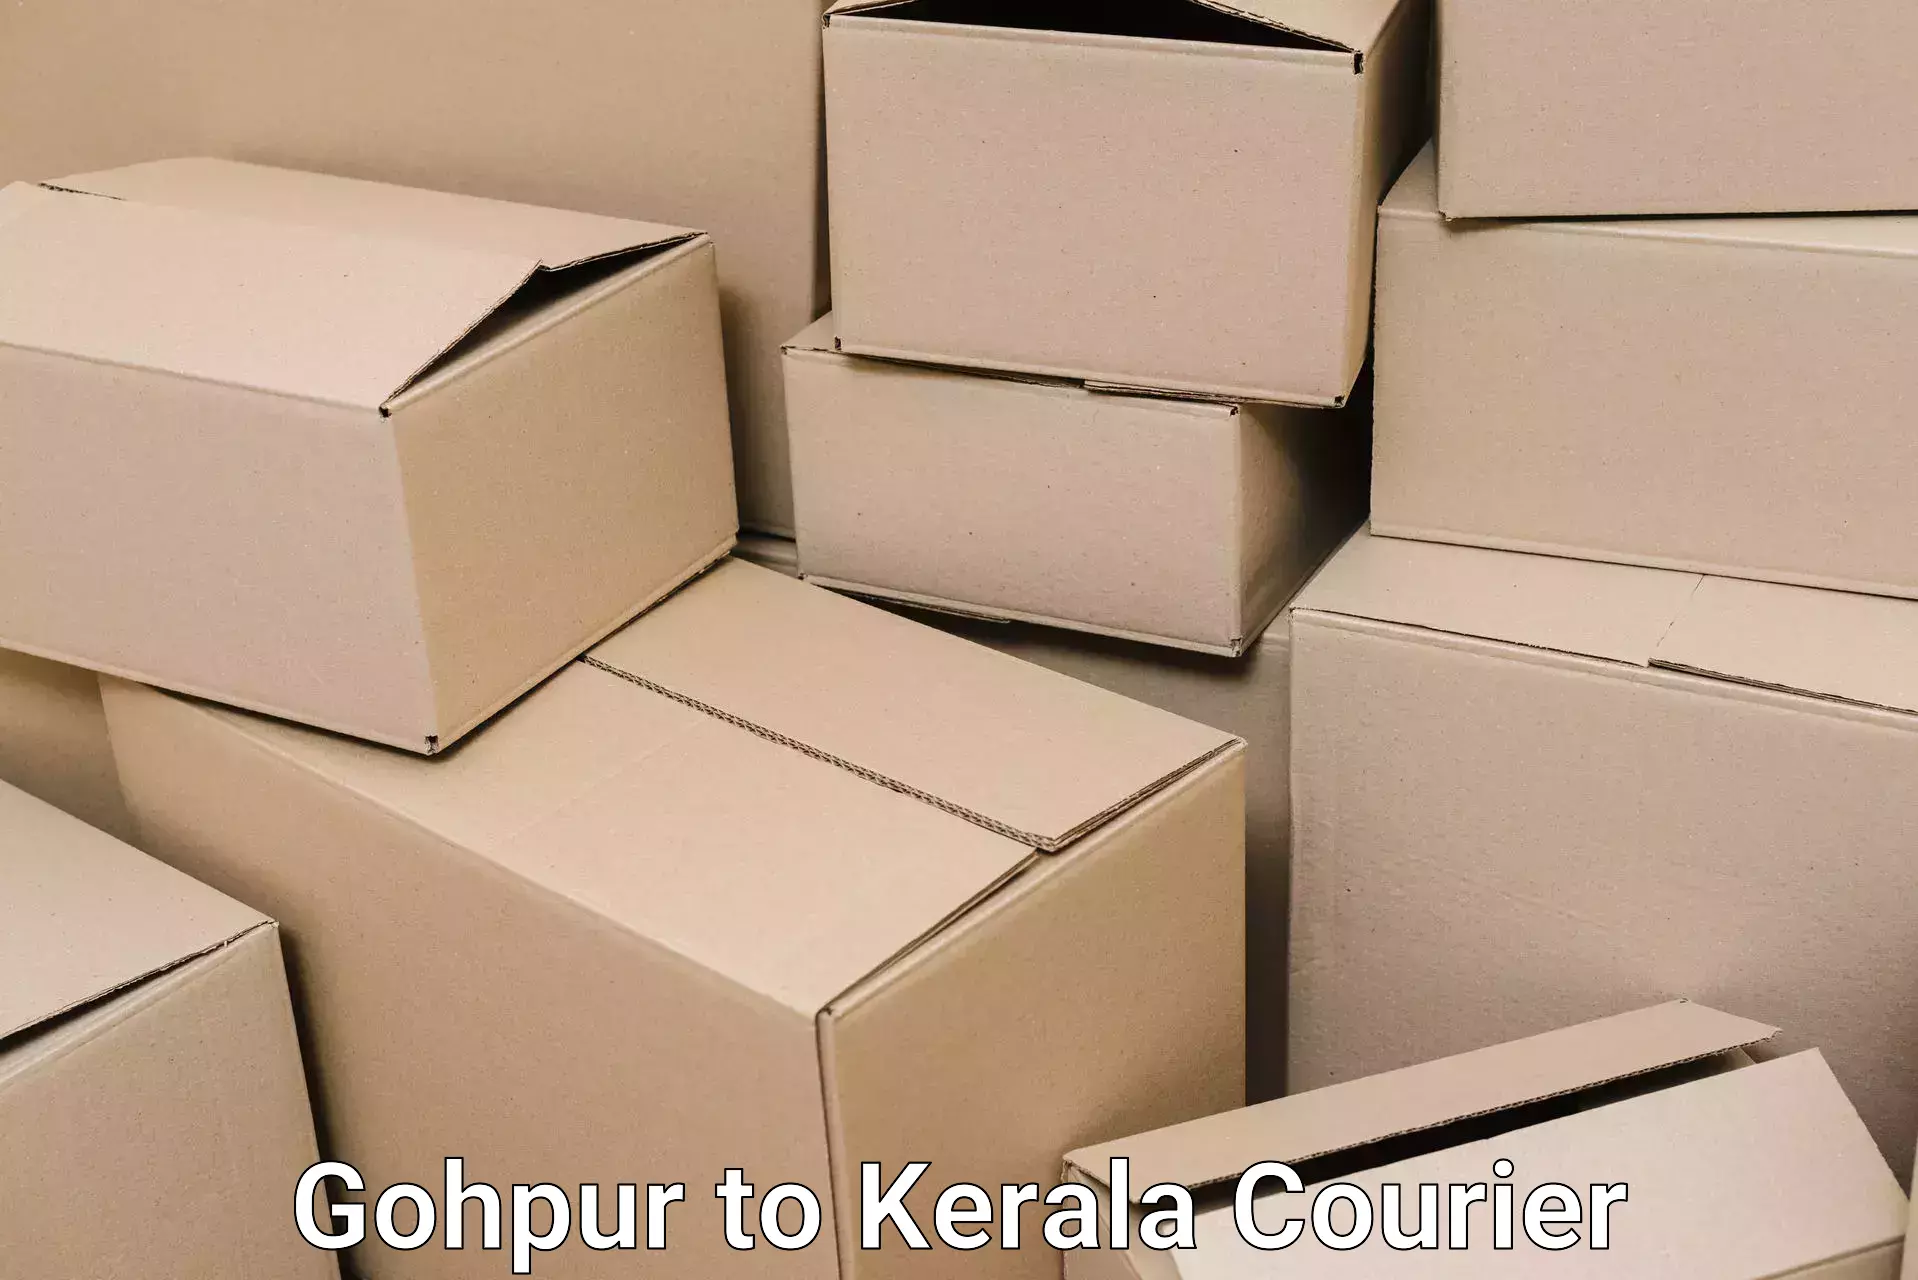 Reliable home moving Gohpur to Kottarakkara